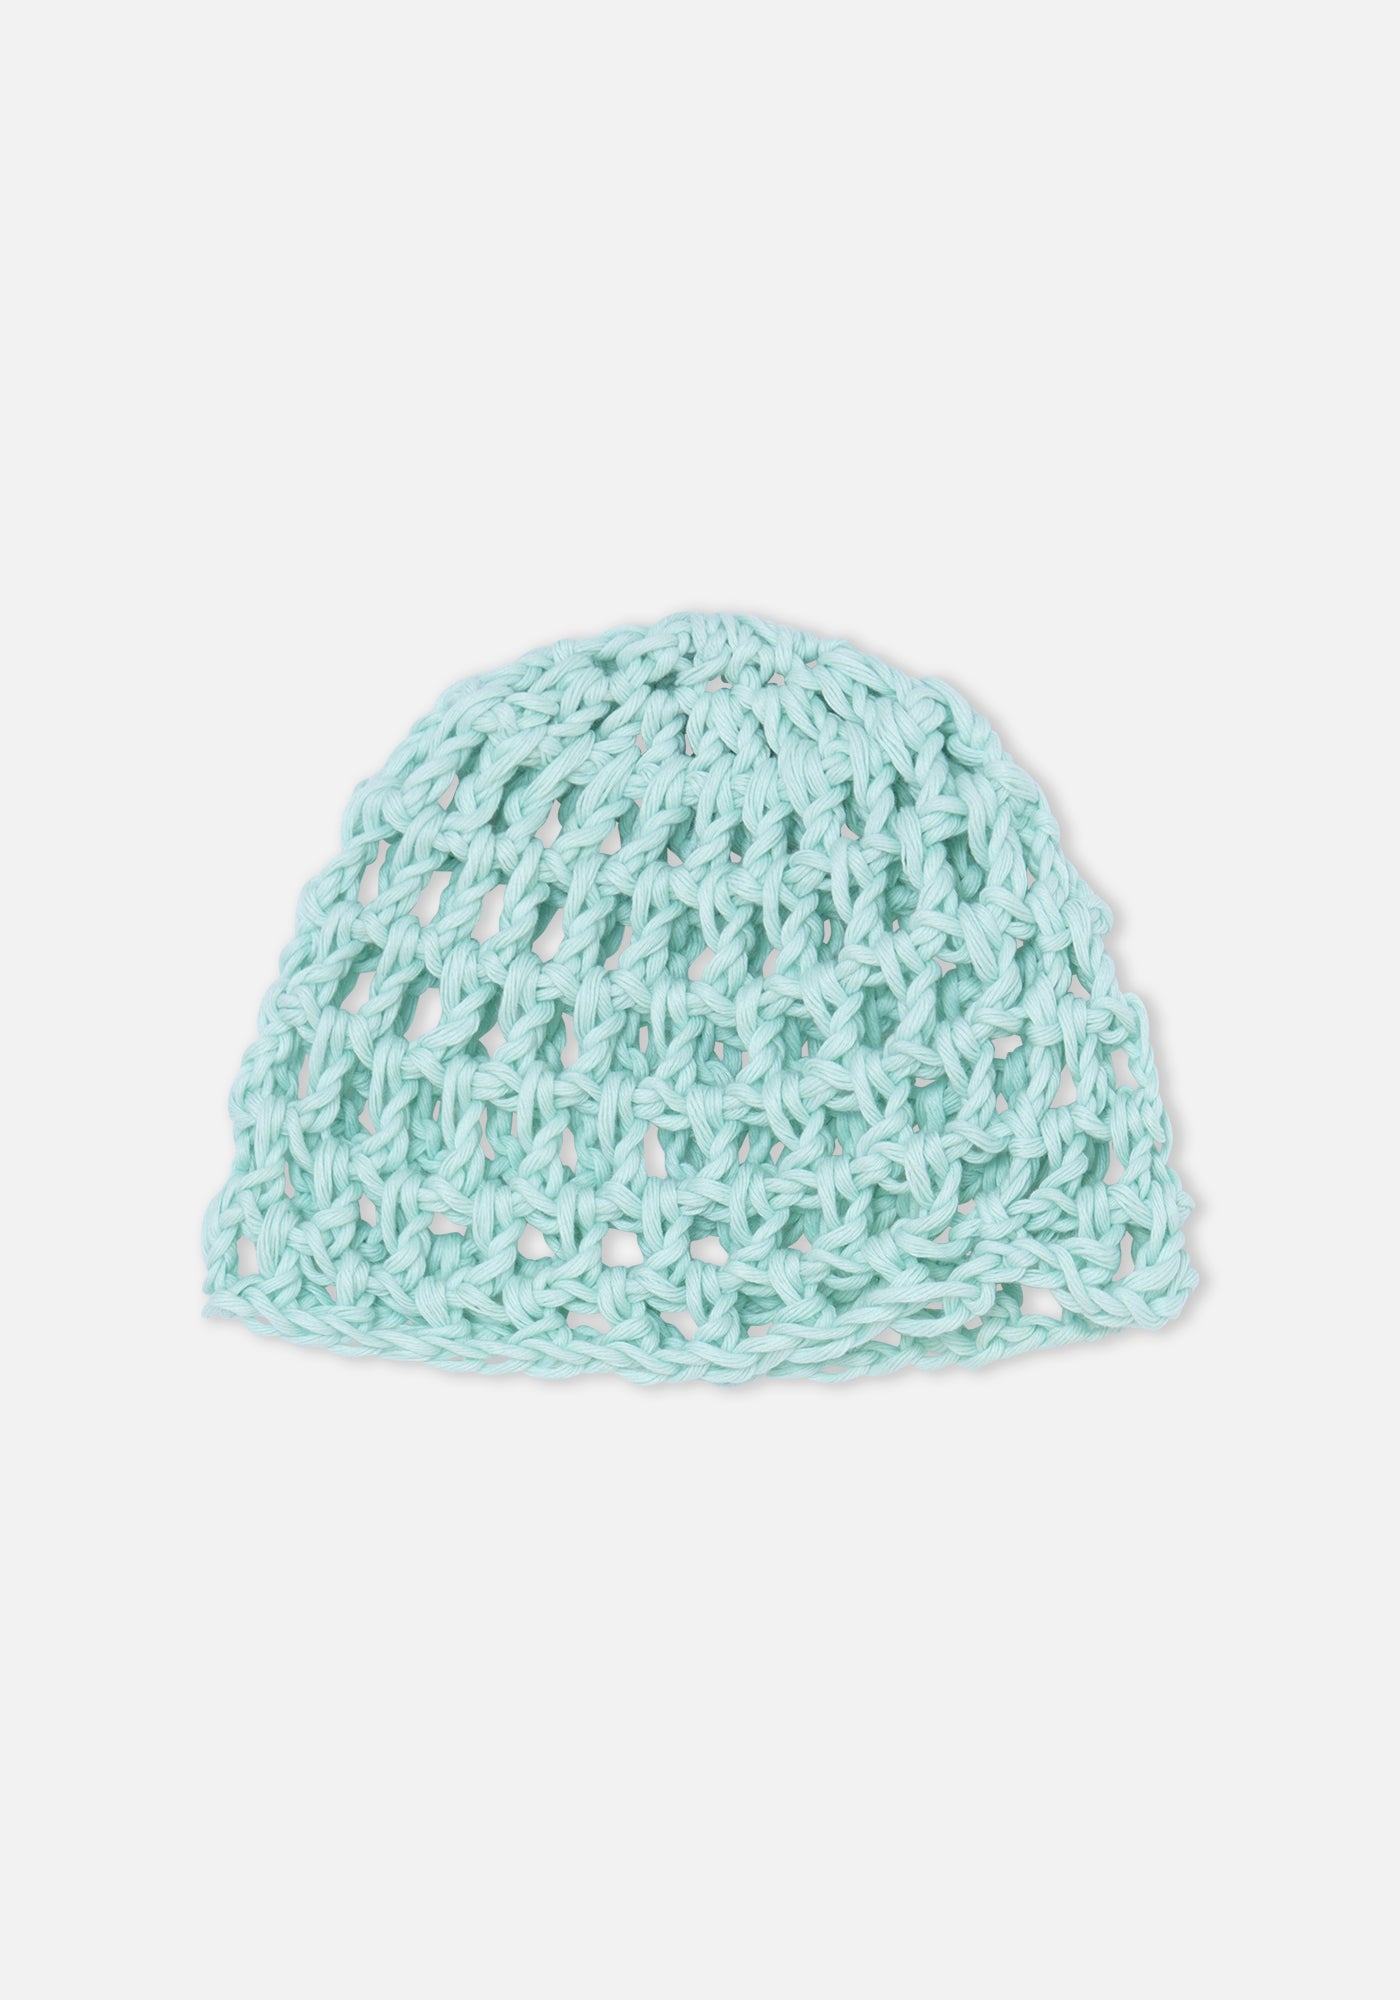 Aqua Colibrí Crochet Hat